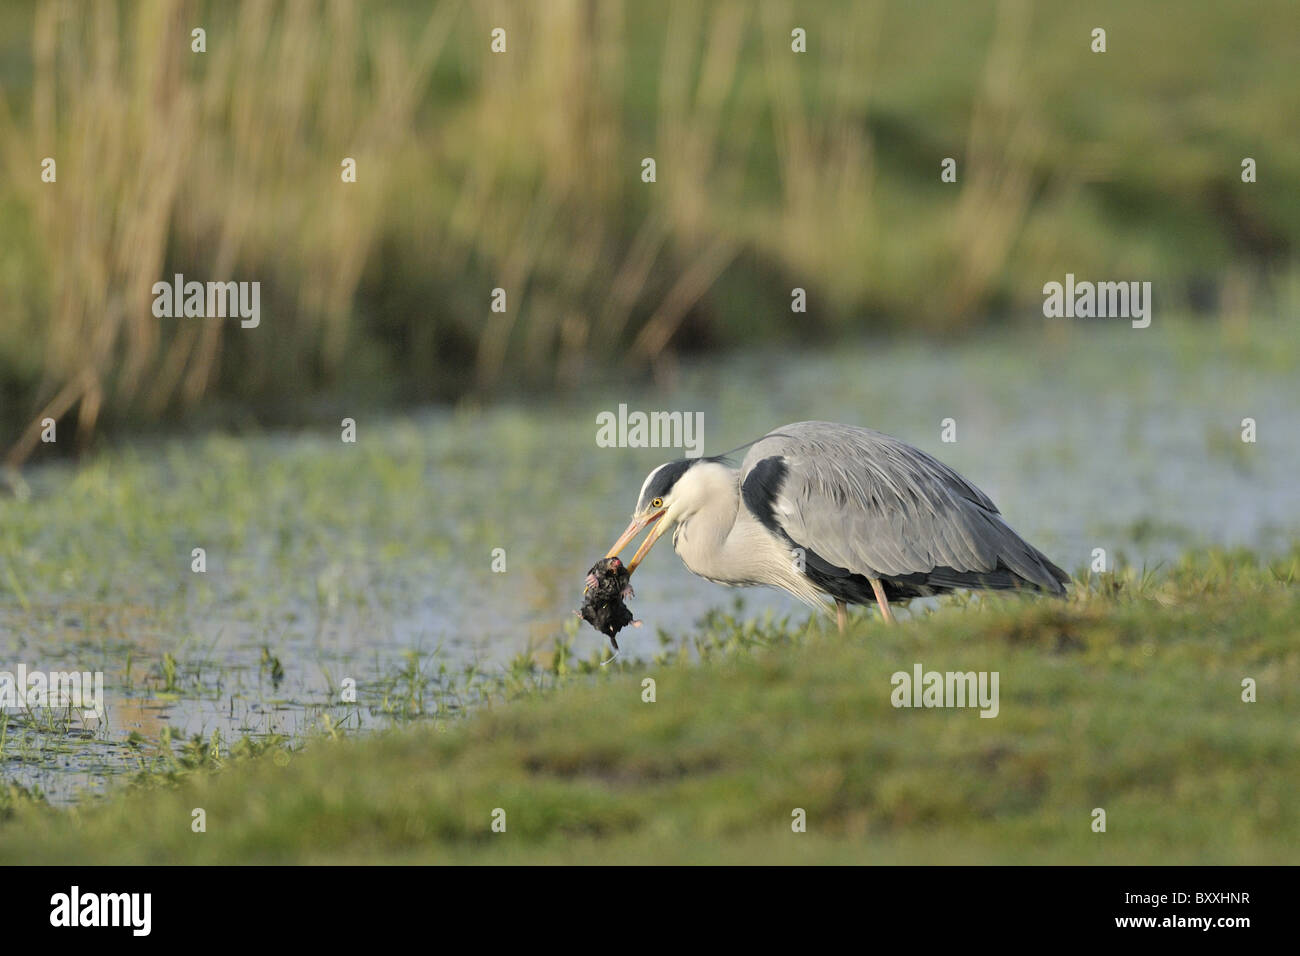 Airone cenerino mangiare una mole,questa immagine è uno dei quattro dello stesso uccello Foto Stock